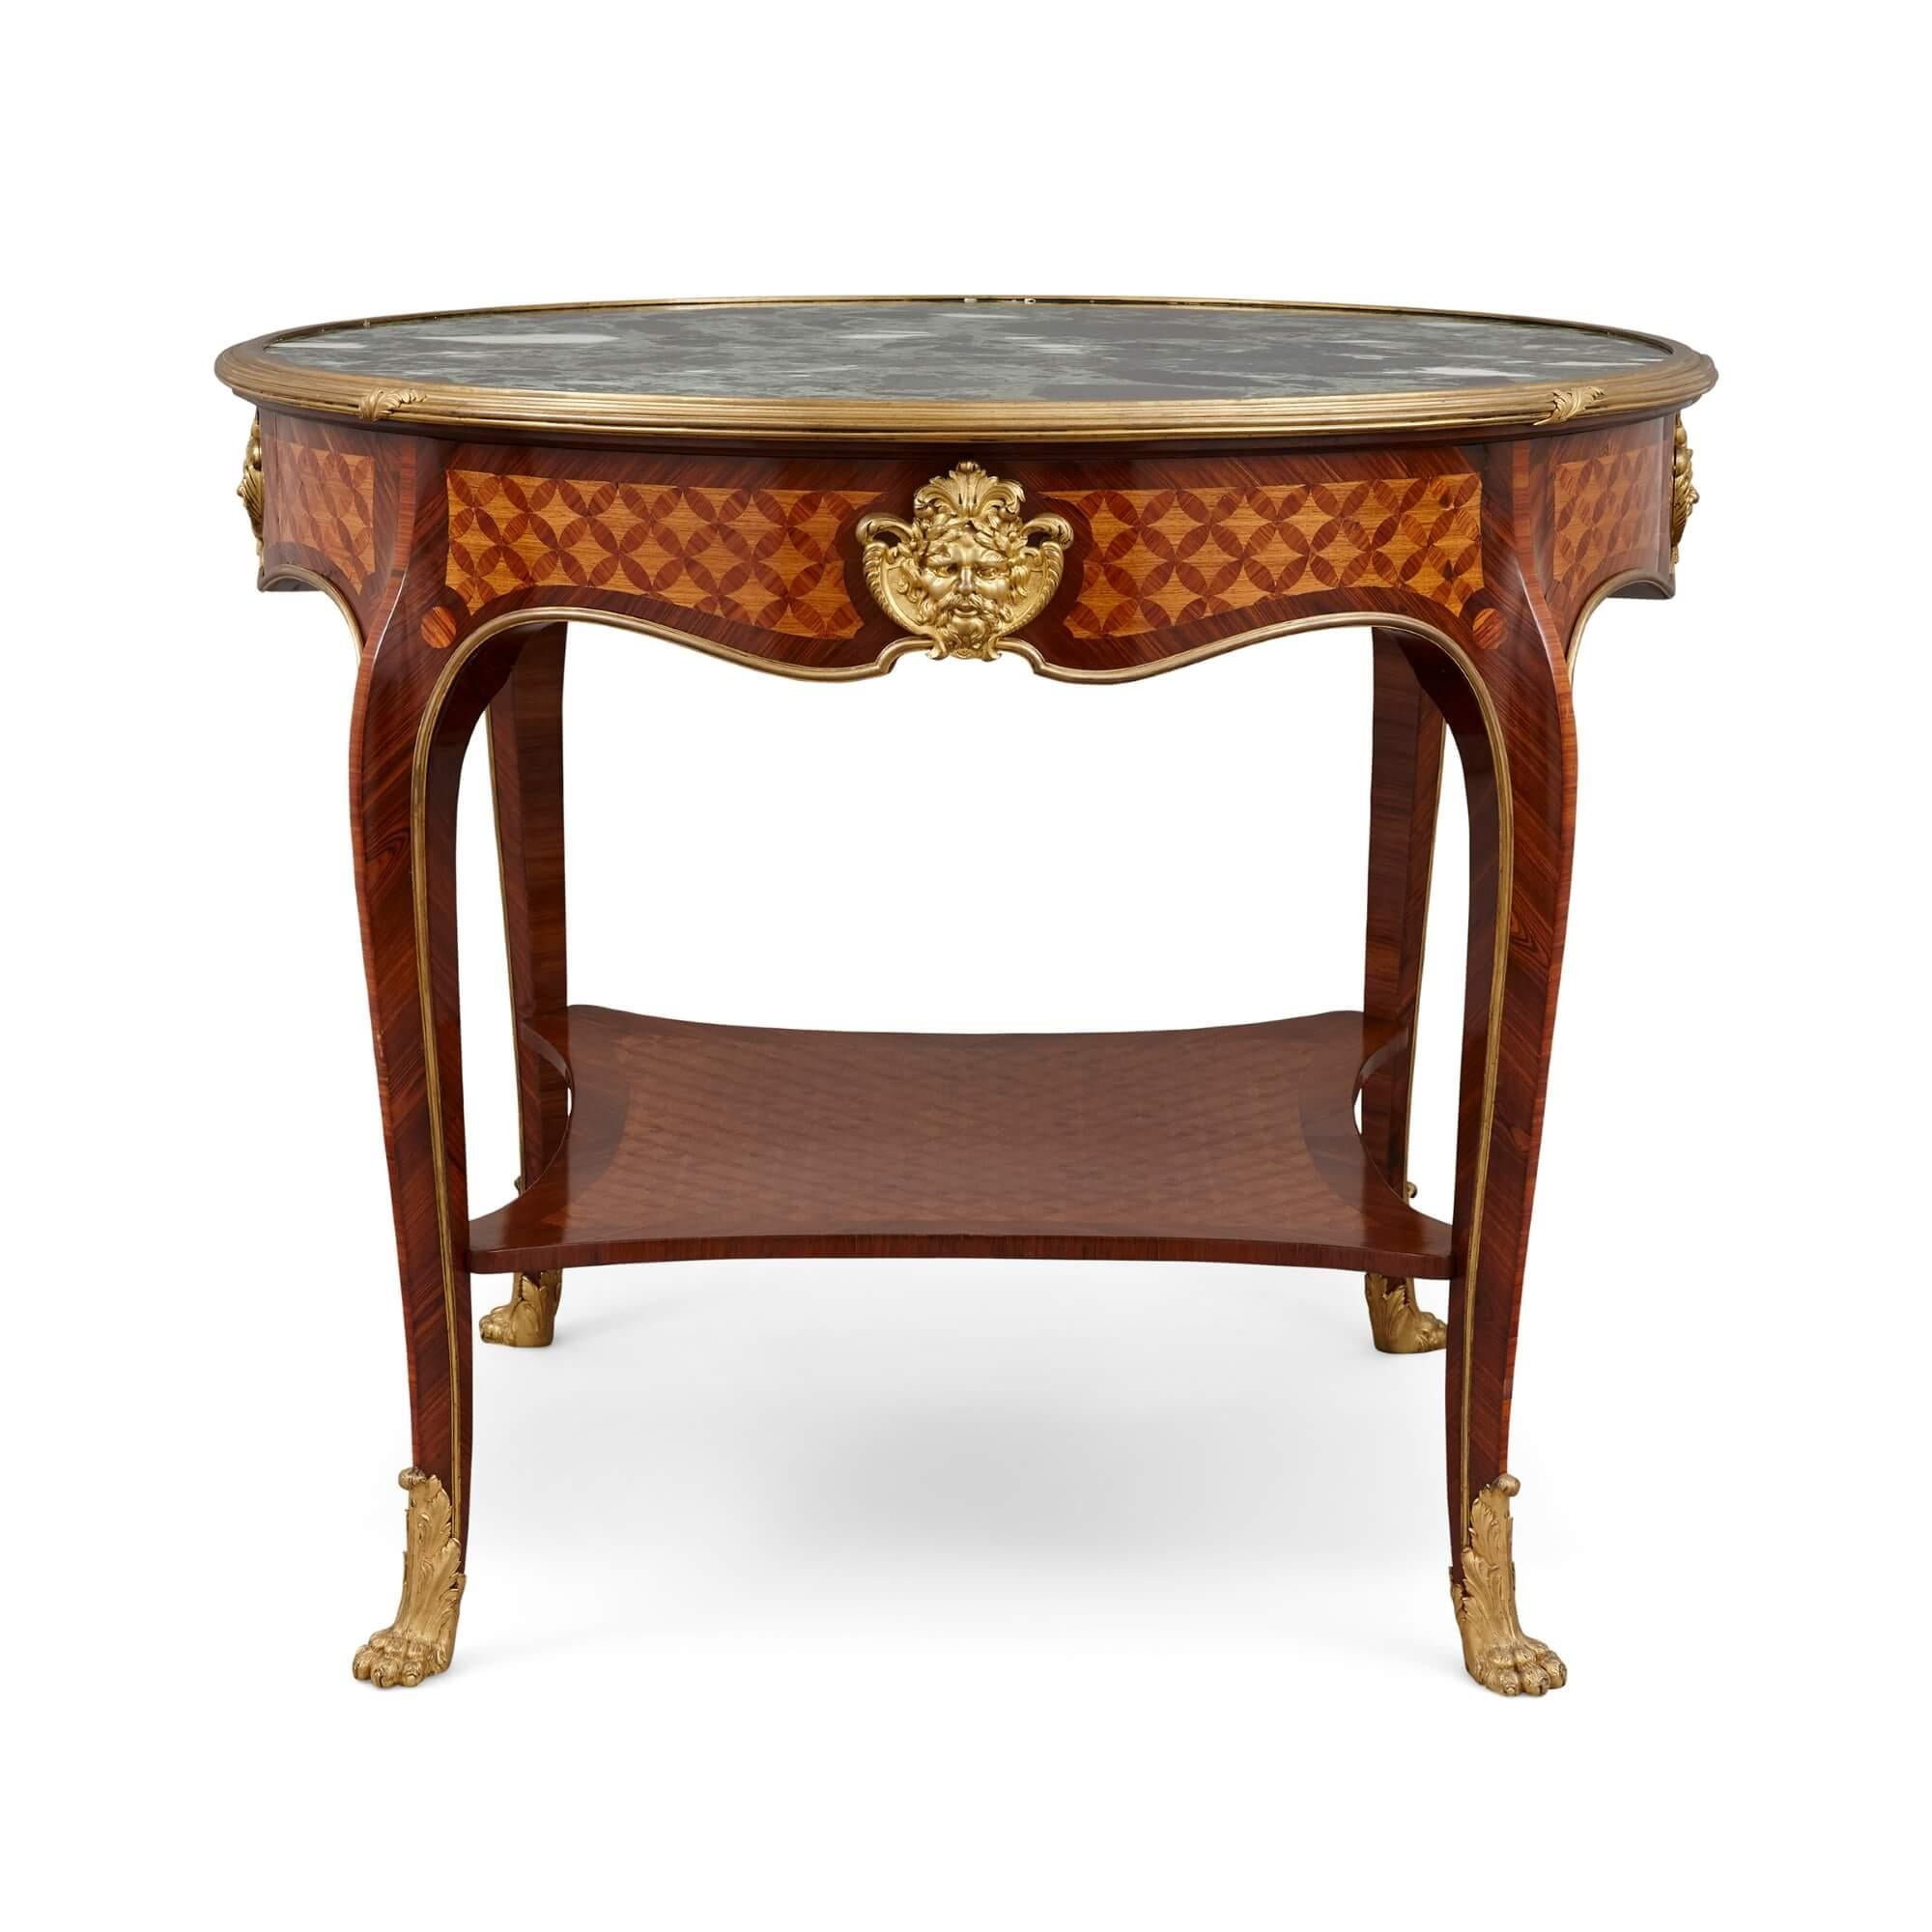 Bei diesem prächtigen Stück handelt es sich um einen antiken Tisch im Louis XV-Stil, der von der famosen Pariser Firma L'Escalier de Cristal meisterhaft aus Königsholz, Tulipwood und Parkett gefertigt wurde. Die Platte aus grünem Marmor ist in eine